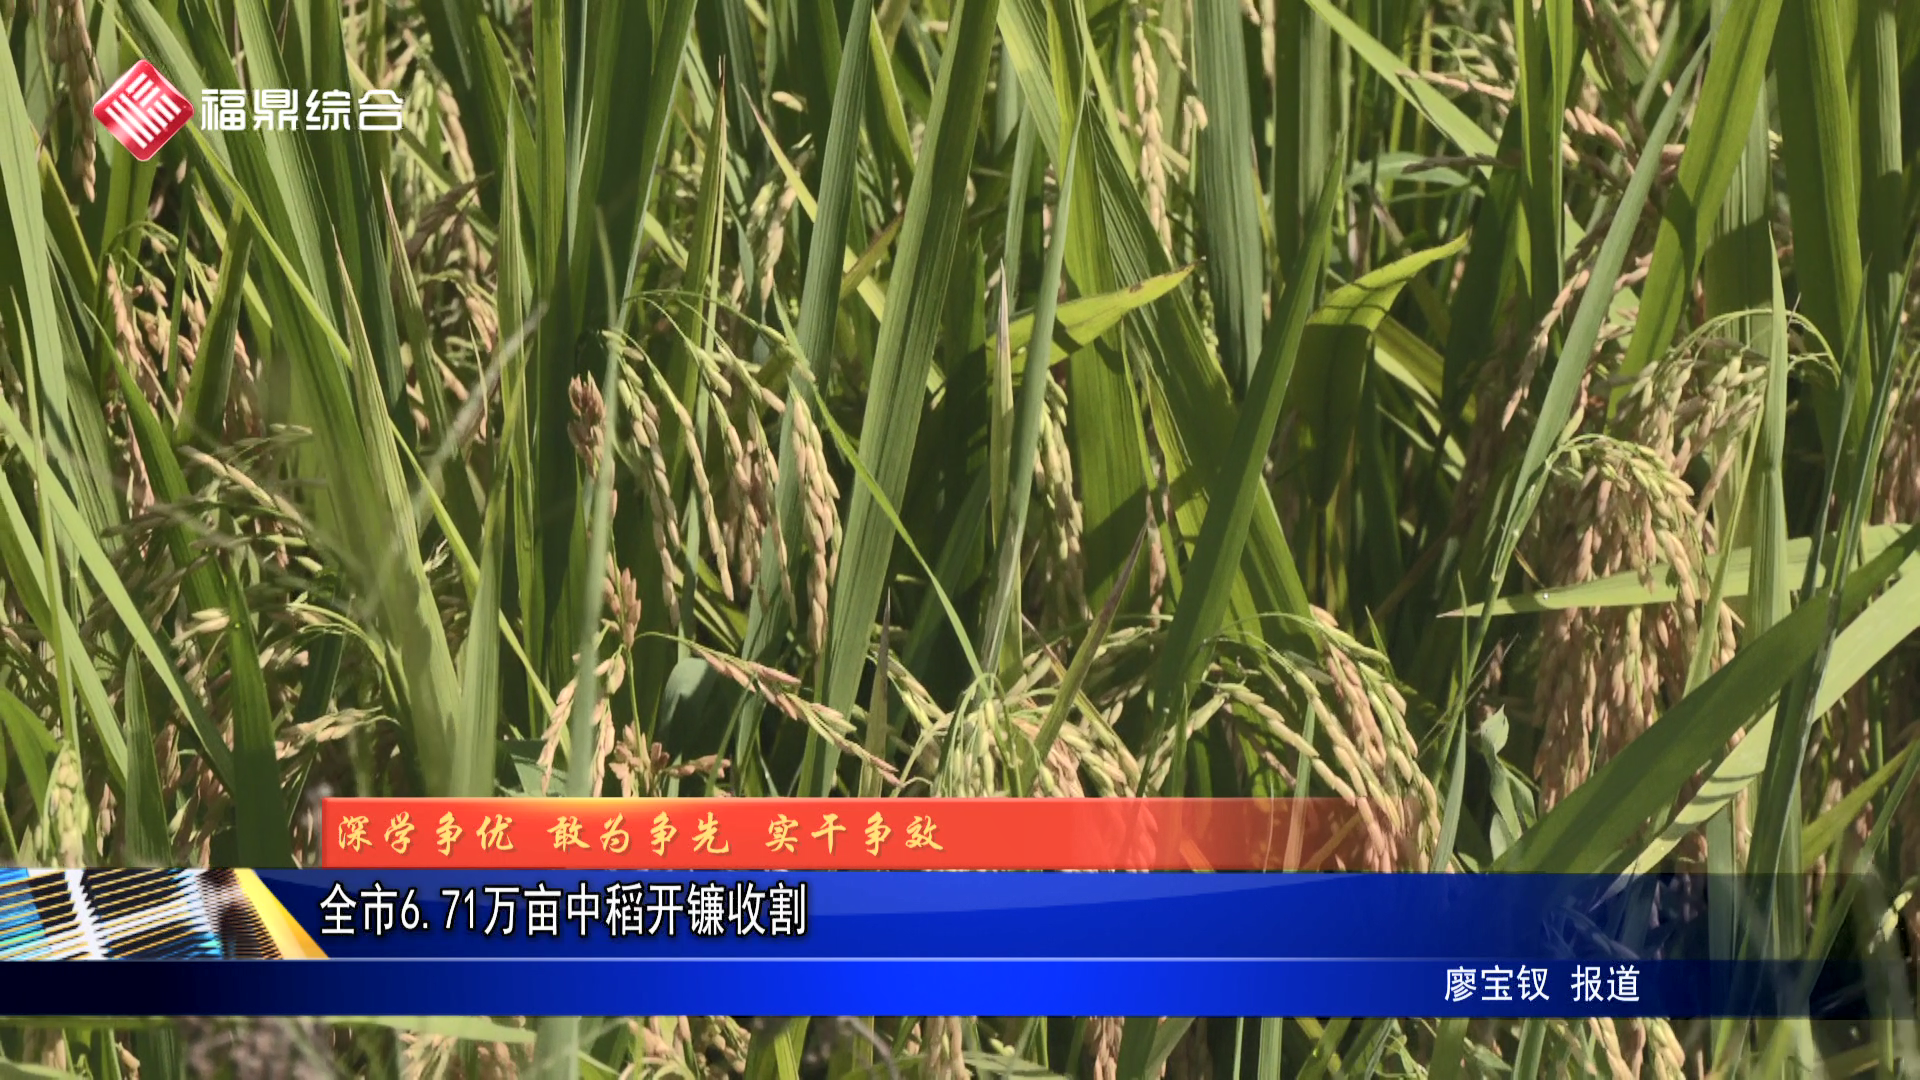 全市6.71万亩中稻开镰收割